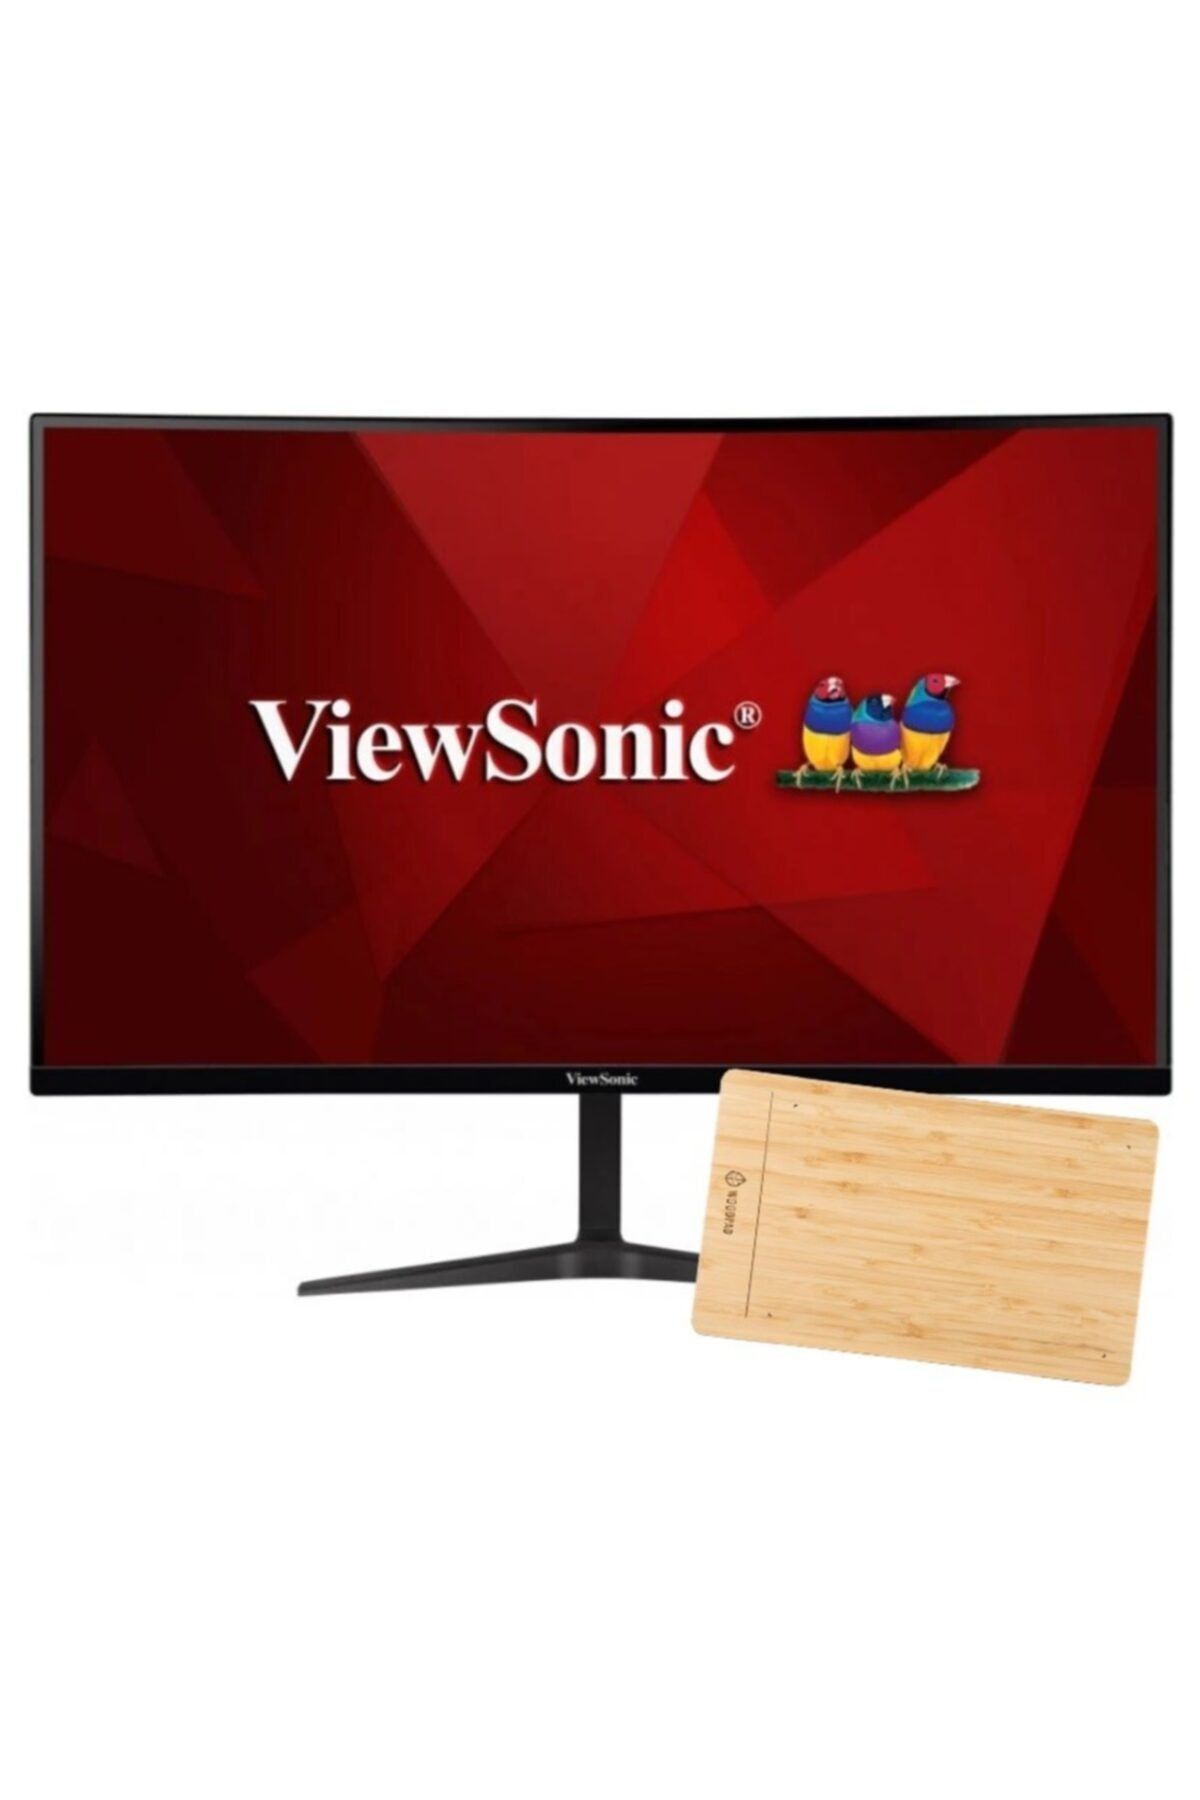 ViewSonic Vx2719-pc-mhd 1ms 240hz Curve Gaming Monitor + Woodpad 10 Grafik Tablet